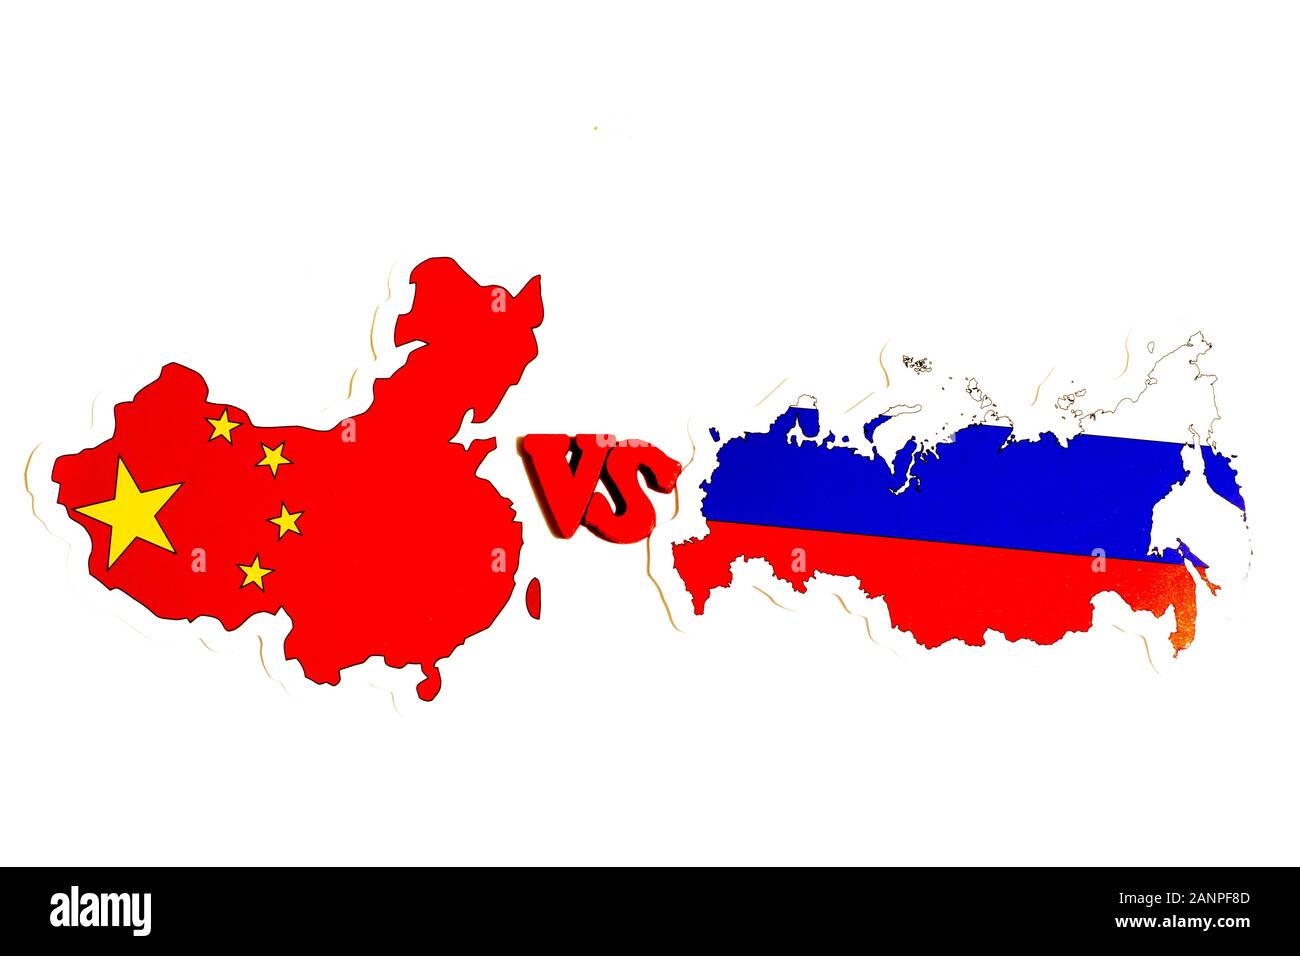 Los Angeles, California, Stati Uniti - 17 gennaio 2020: Illustrazione del concetto di Cina vs Russia per le notizie in politica, editoriale Illustrativo Foto Stock